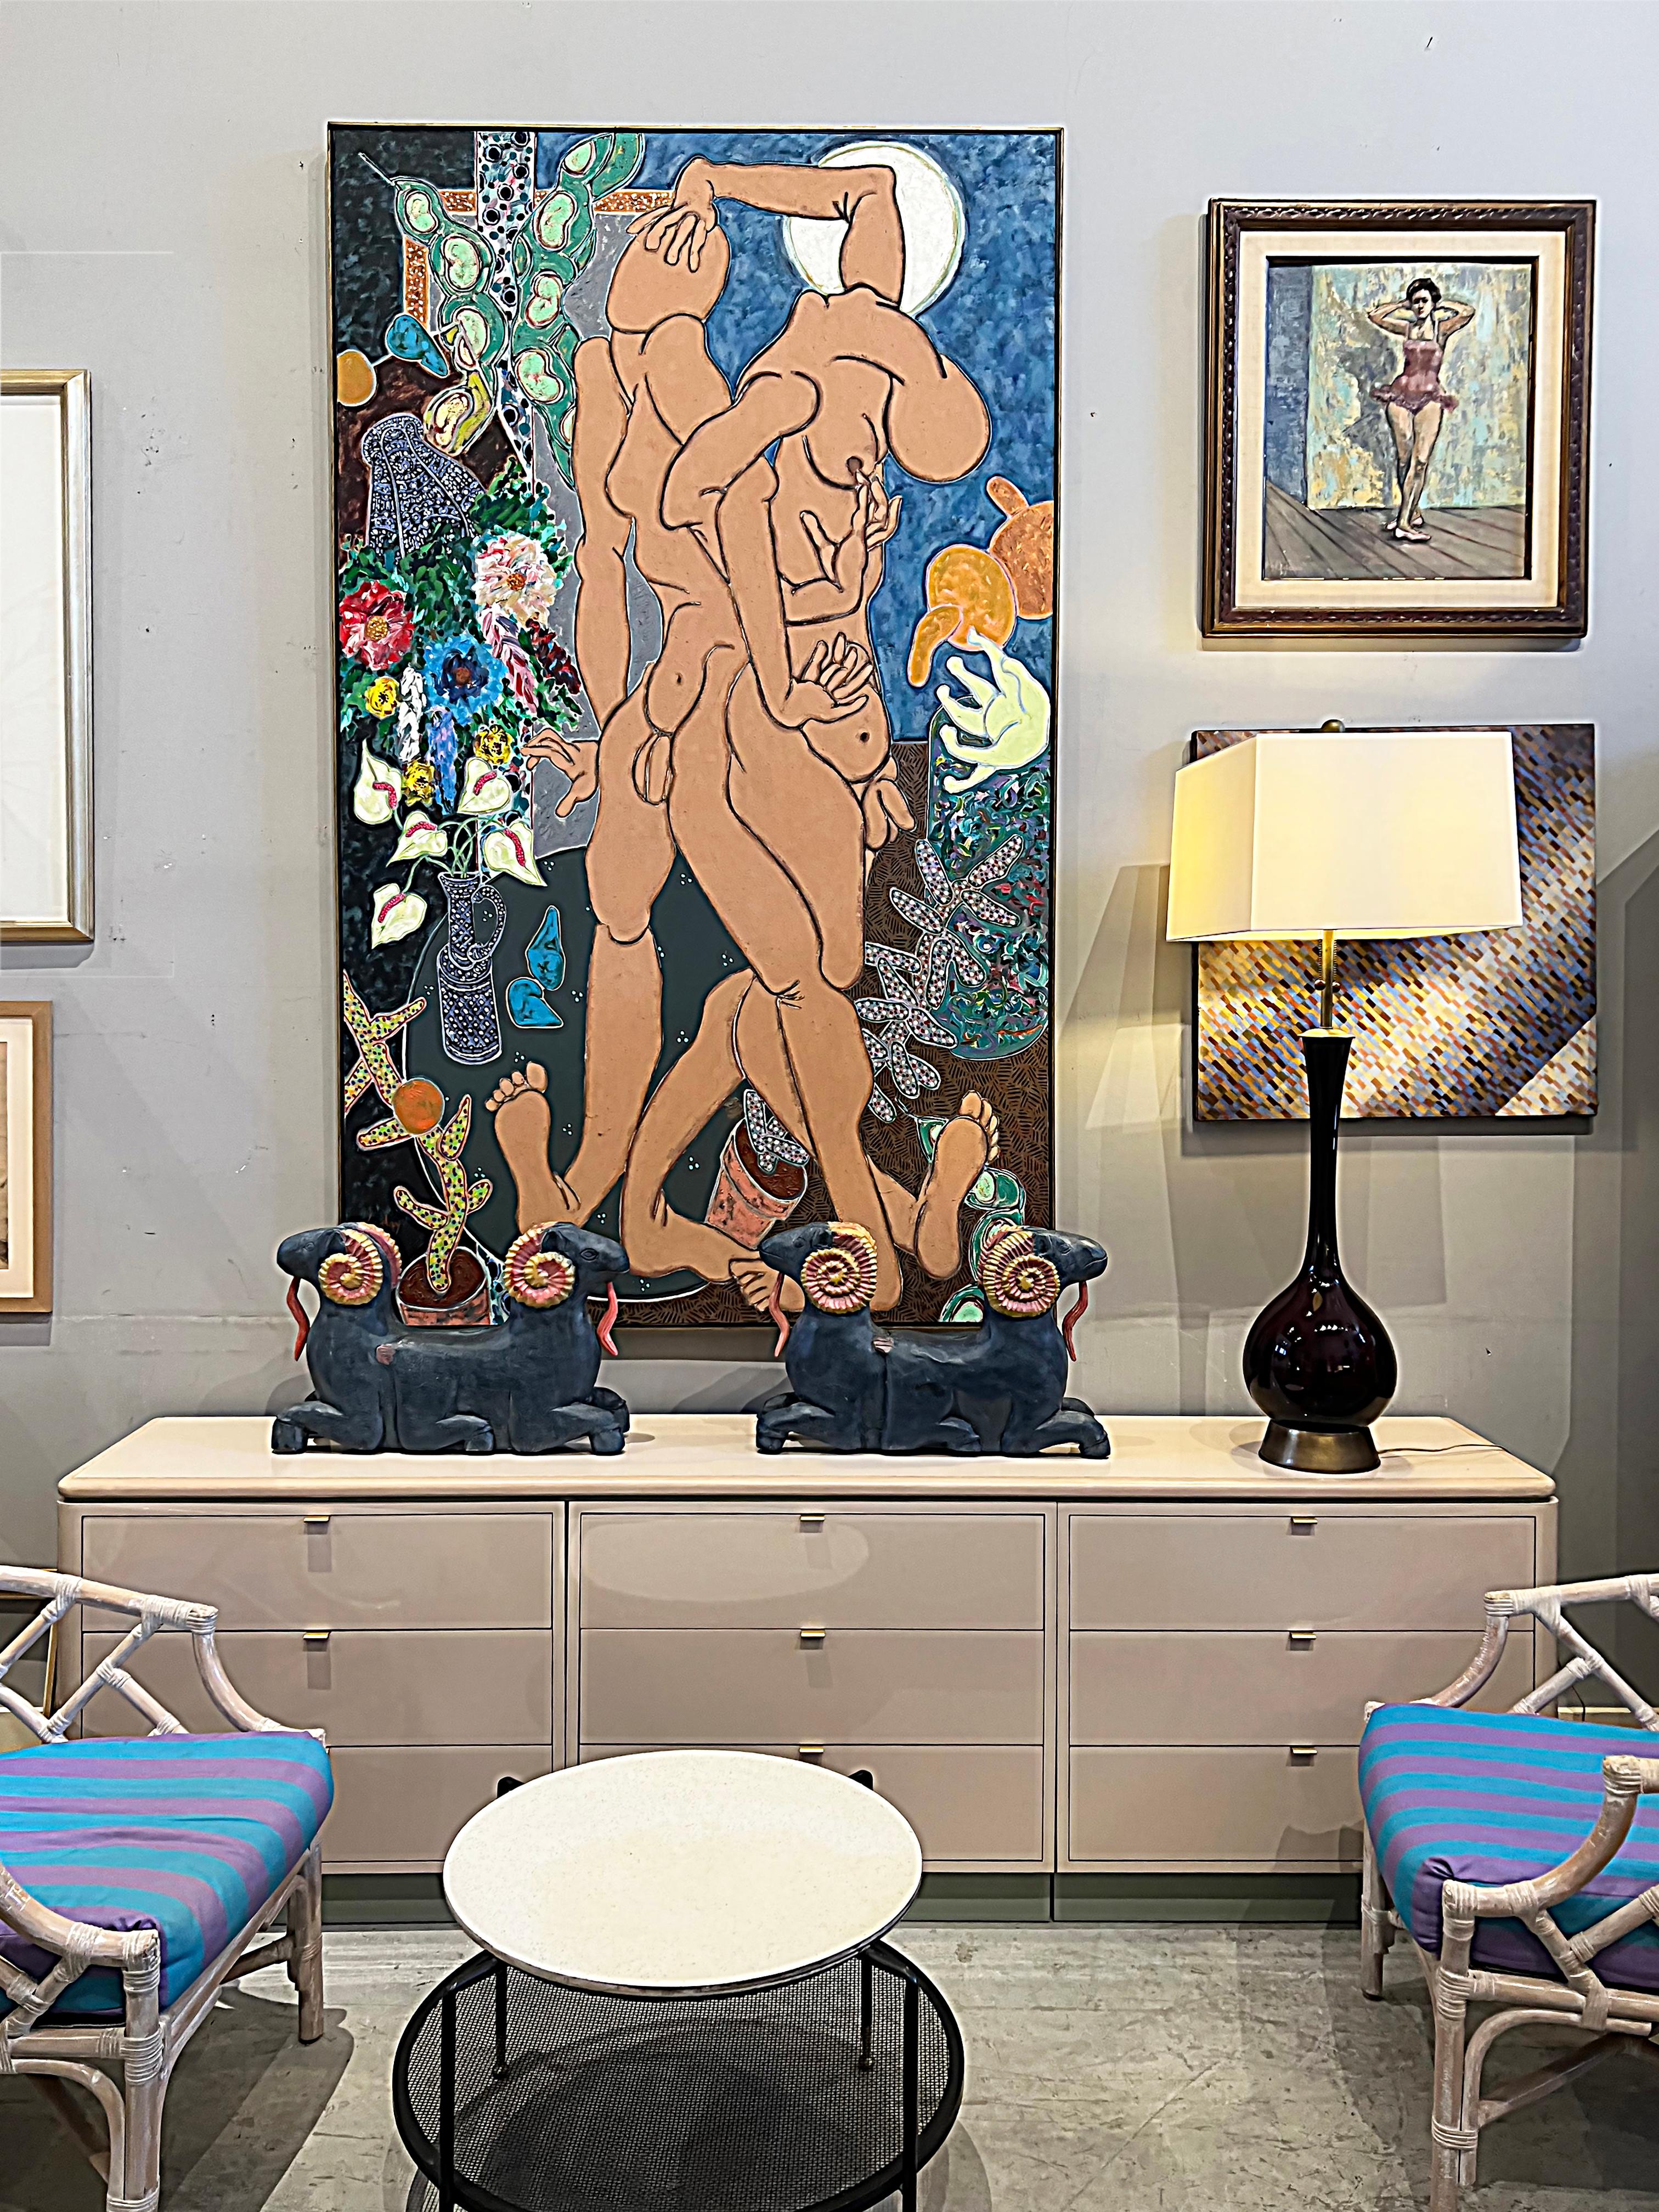 Monumental Harley Francis nus masculins abstraits peinture à l'huile sur toile

Est proposée à la vente une peinture à l'huile abstraite monumentale de Harley Frances ( 1940-2017). Les sujets sont deux des nus masculins abstraits de Francis entourés